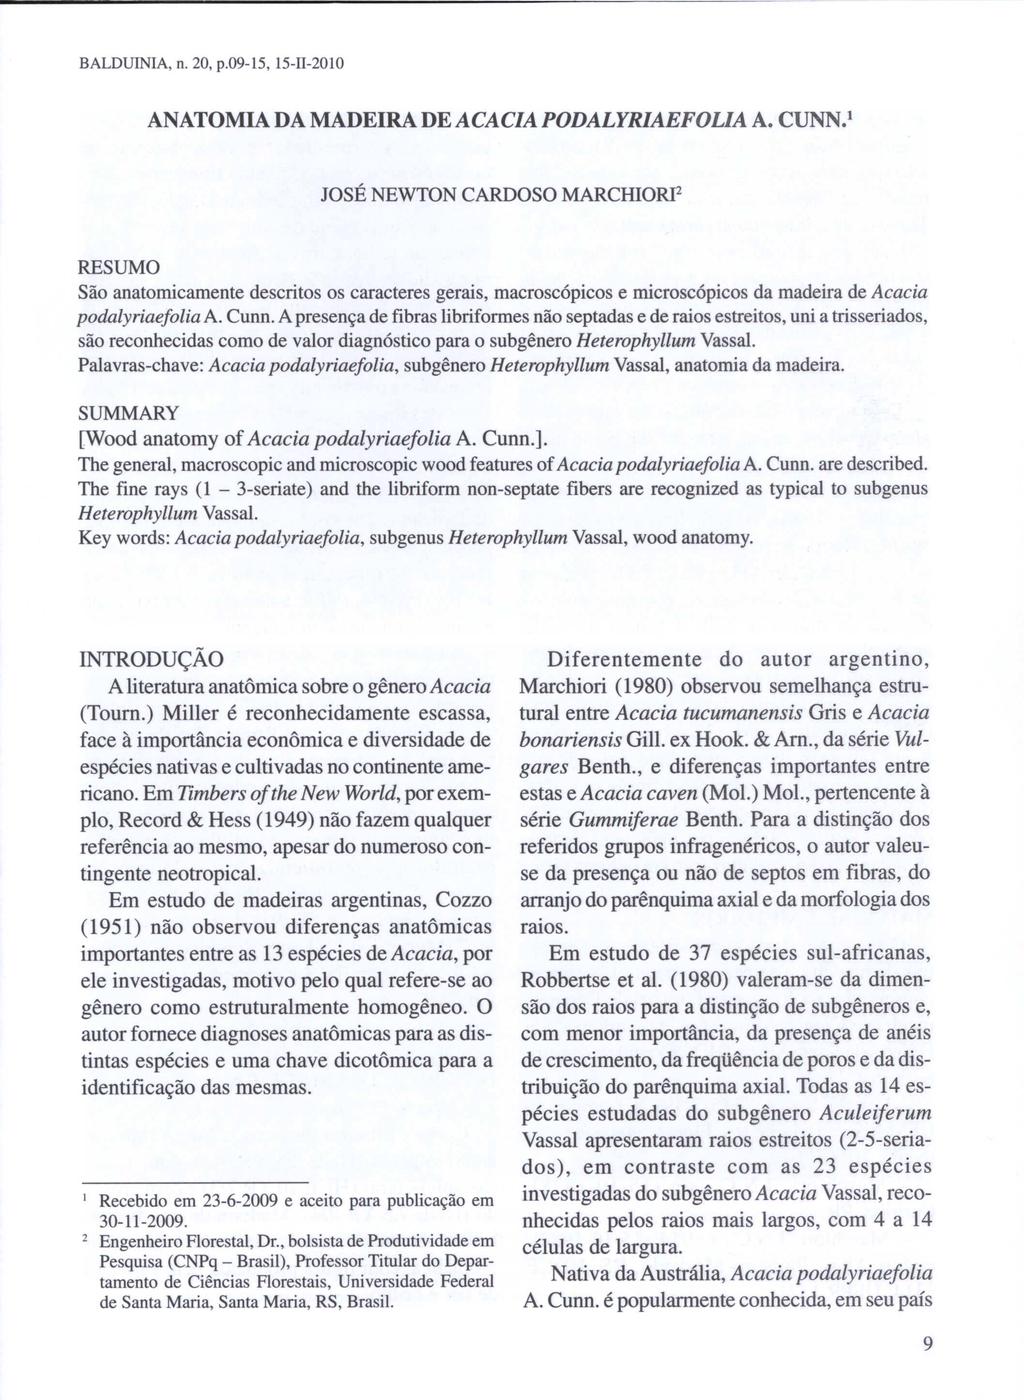 BALDUINIA, n. 20, p.09-15, 15-I1-201O ANATOMIA DA MADEIRA DE ACACIA PODALYRIAEFOLIA A. CUNN.